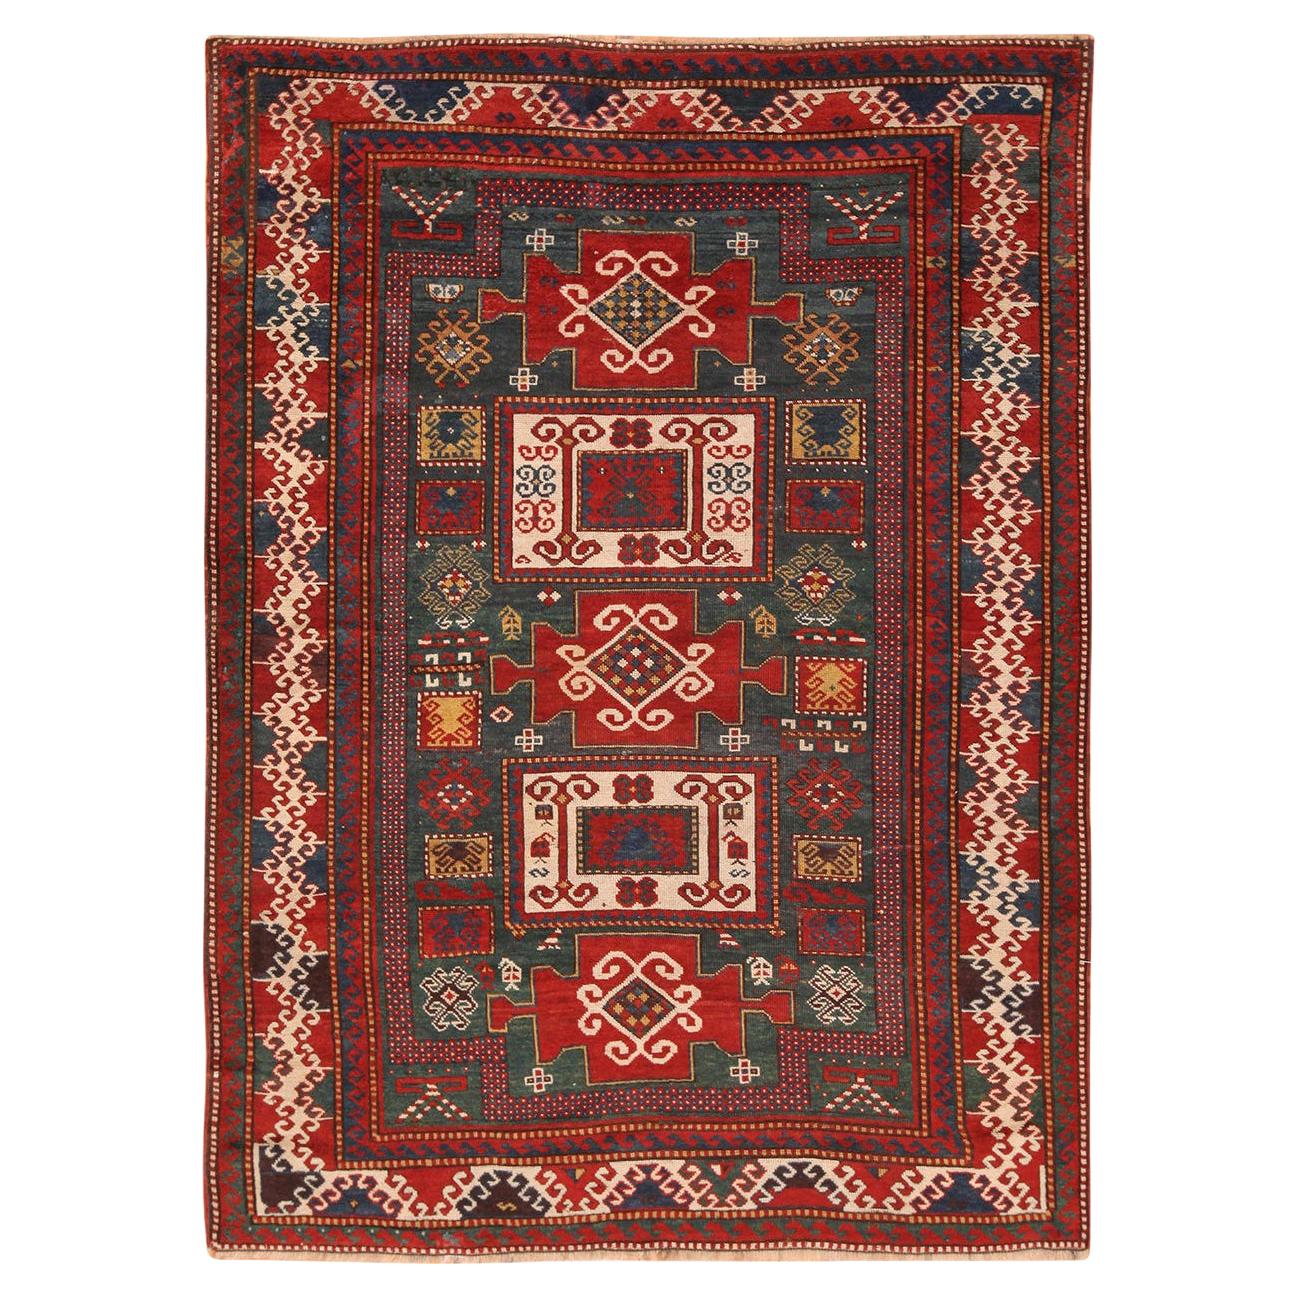 Antique Caucasian Kazak Rug. Size: 5 ft 4 in x 7 ft (1.63 m x 2.13 m)